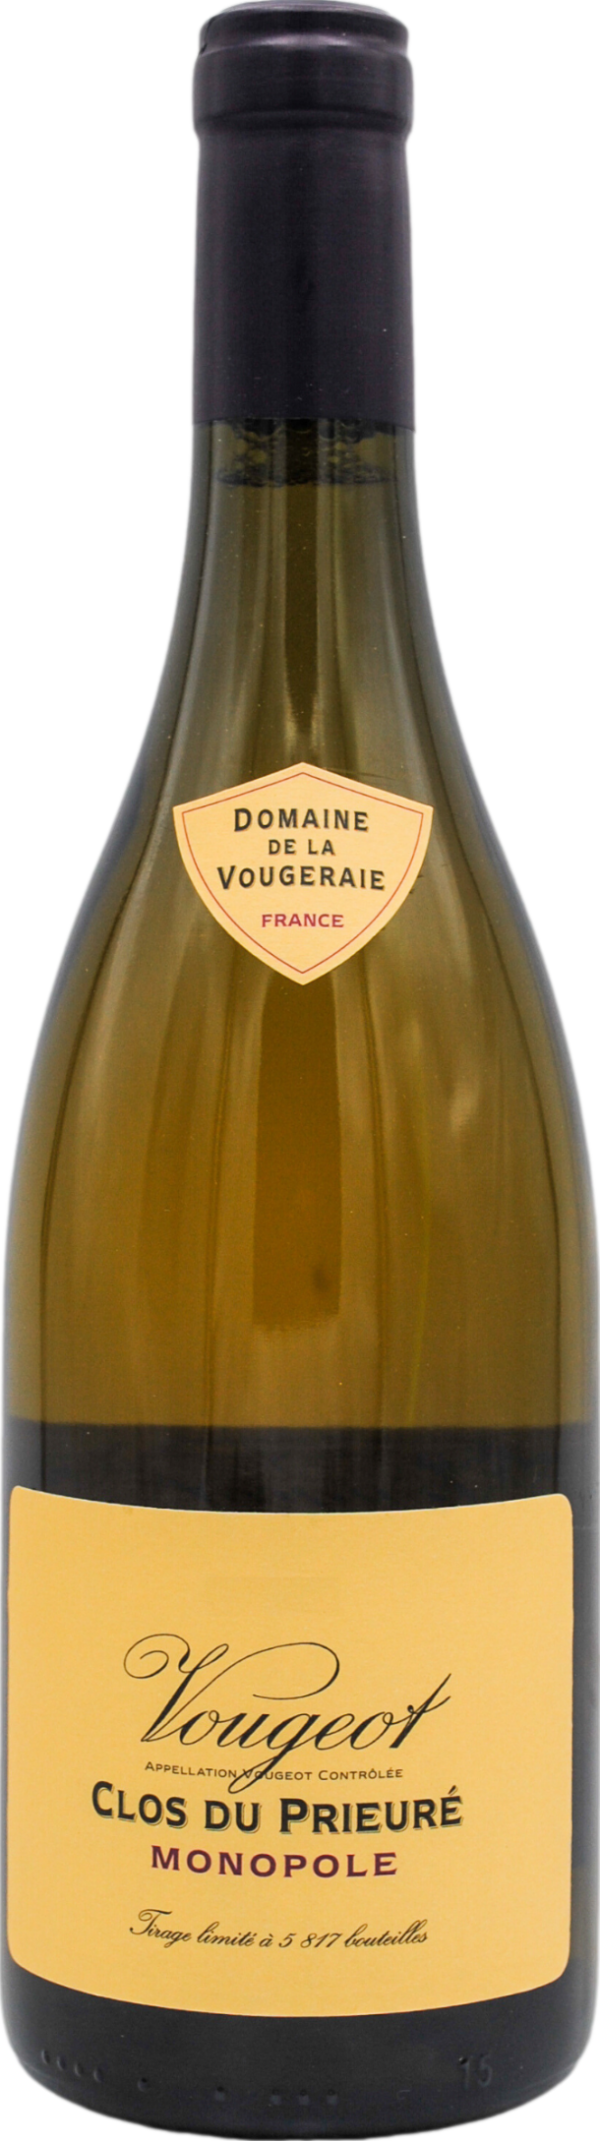 Product image of Domaine de la Vougeraie Le Clos du Prieure Blanc 2019 from 8wines